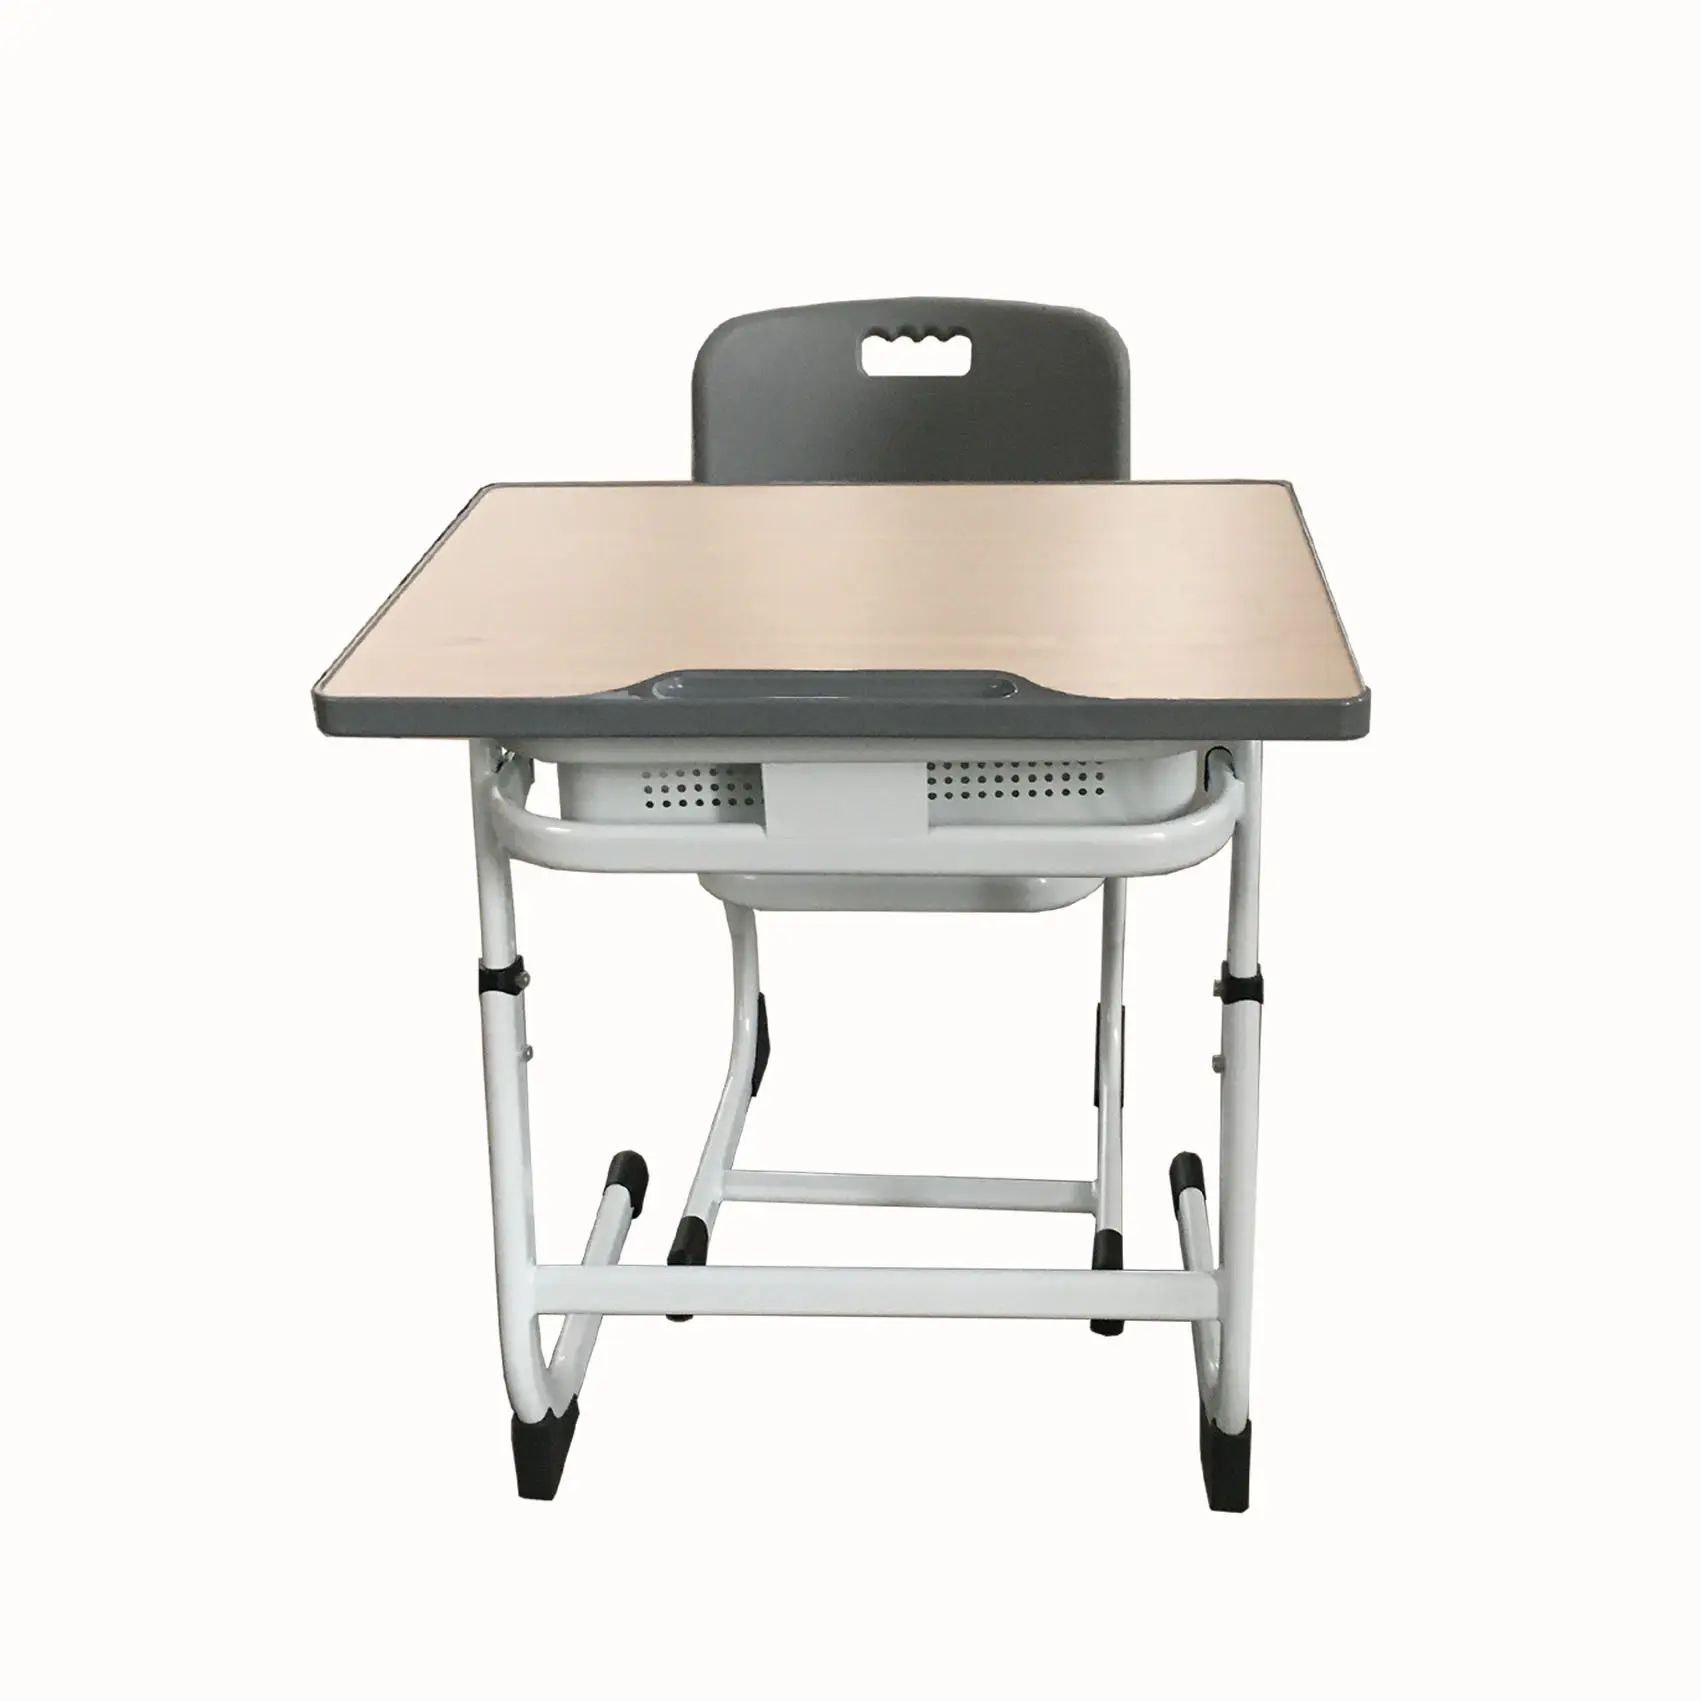 بسعر المصنع مجموعة مكاتب وكراسي للمدارس الابتدائية طاولة واحدة للفصول الدراسية للطلاب